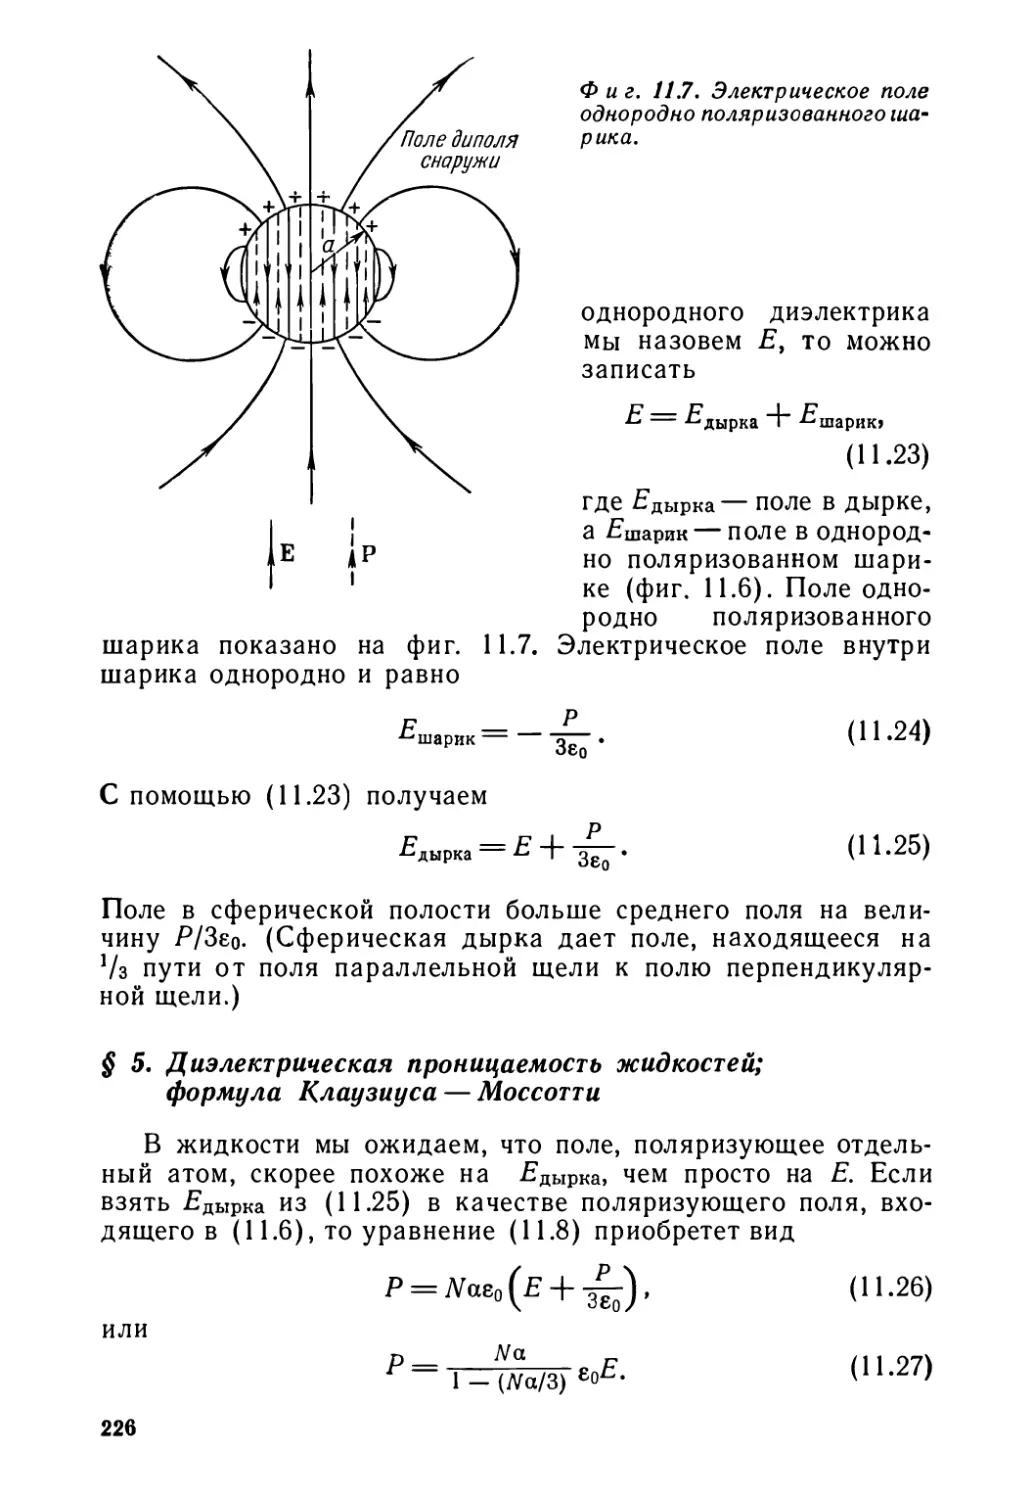 § 5. Диэлектрическая проницаемость жидкостей; формула Клаузиуса-Моссотти